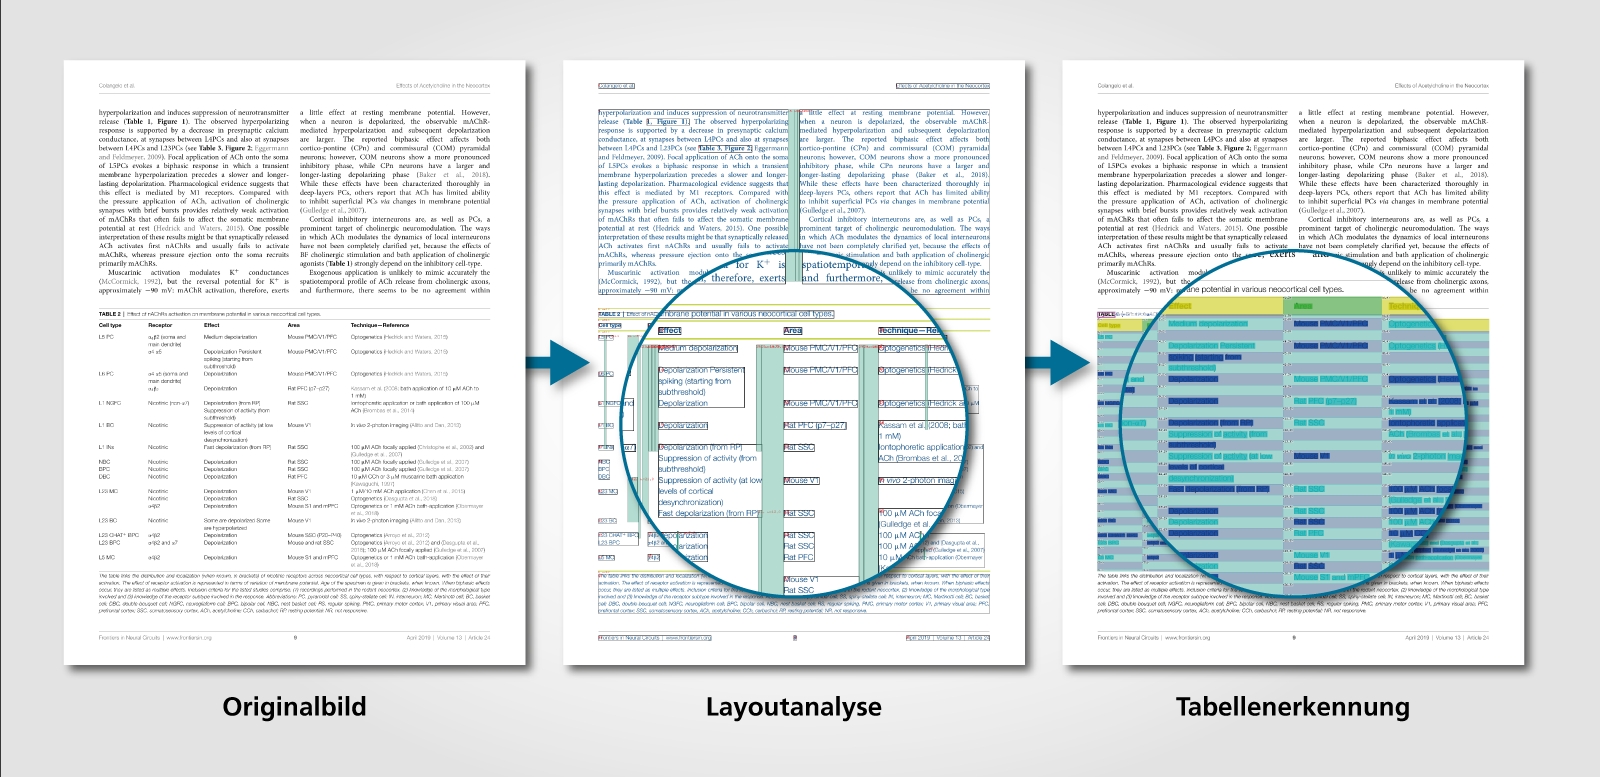 Beispiel für eine KI-gestützte Layoutanalyse und Tabellenerkennung digitalisierter Dokumente.